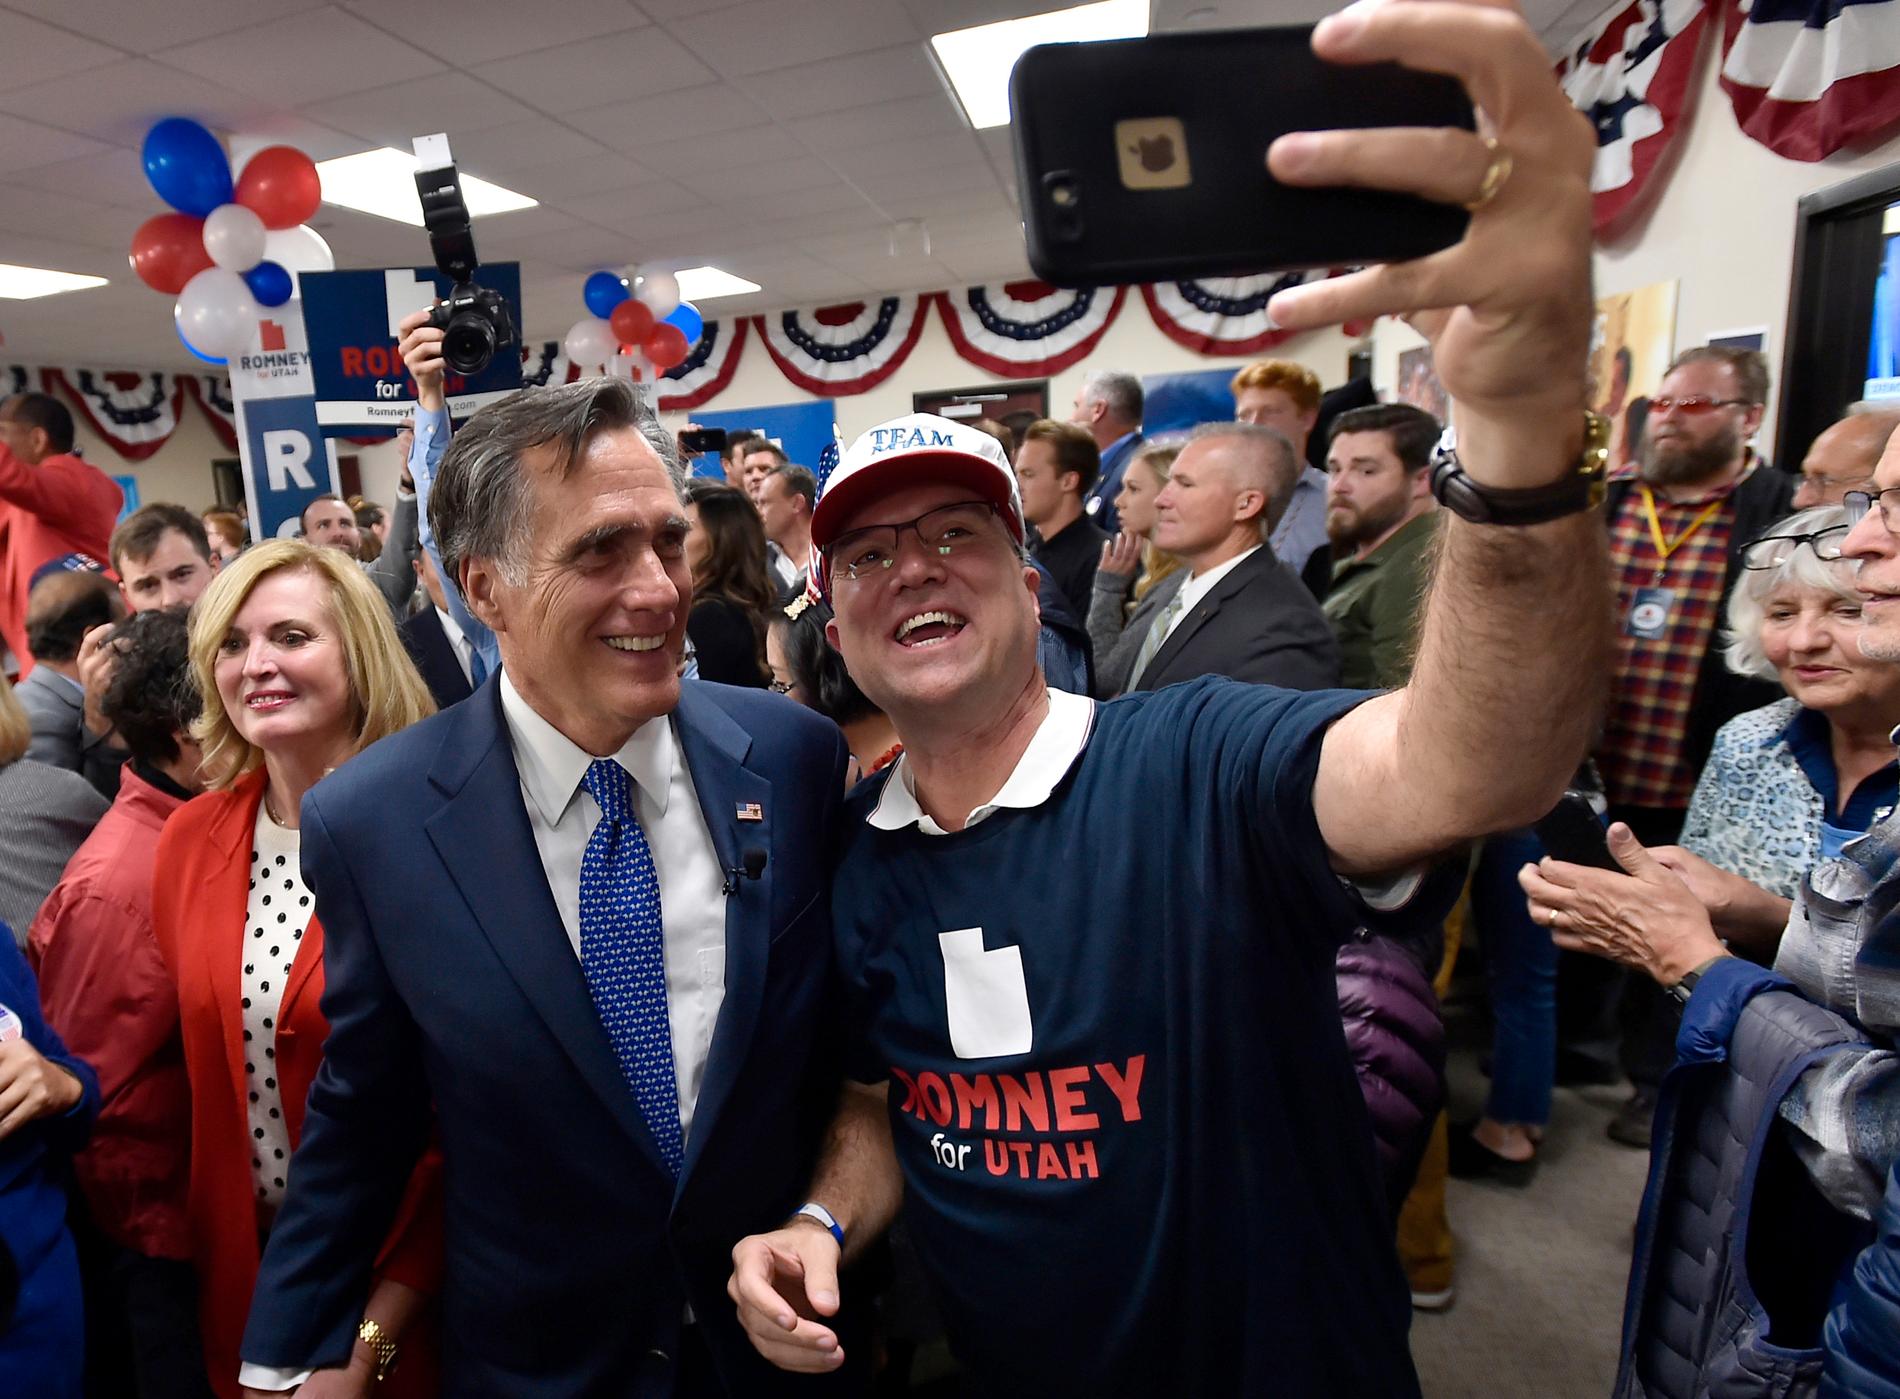 En glad Mitt Romney, som just valts till republikansk senator för Utah, poserar med en anhängare.